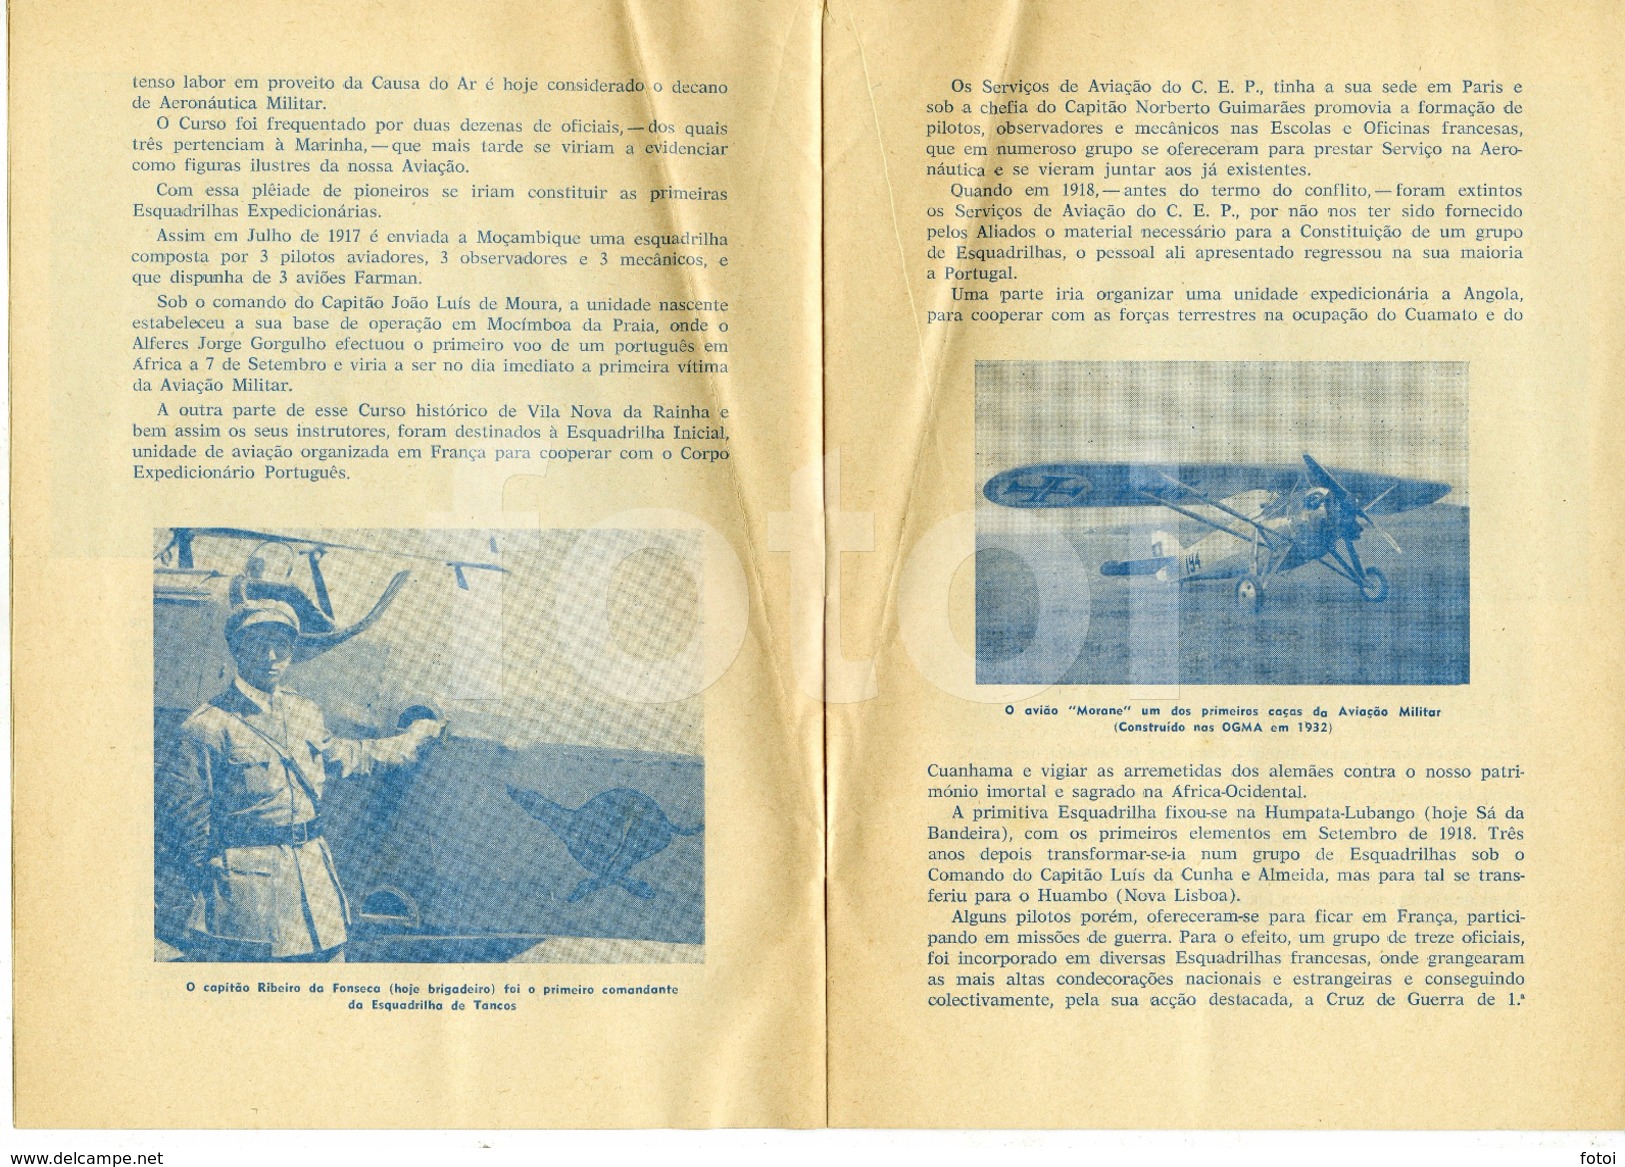 1964 FOLHETO COMEMORATIVO 50 ANOS AVIAÇAO MILITAR PORTUGAL - AeroAirplanes